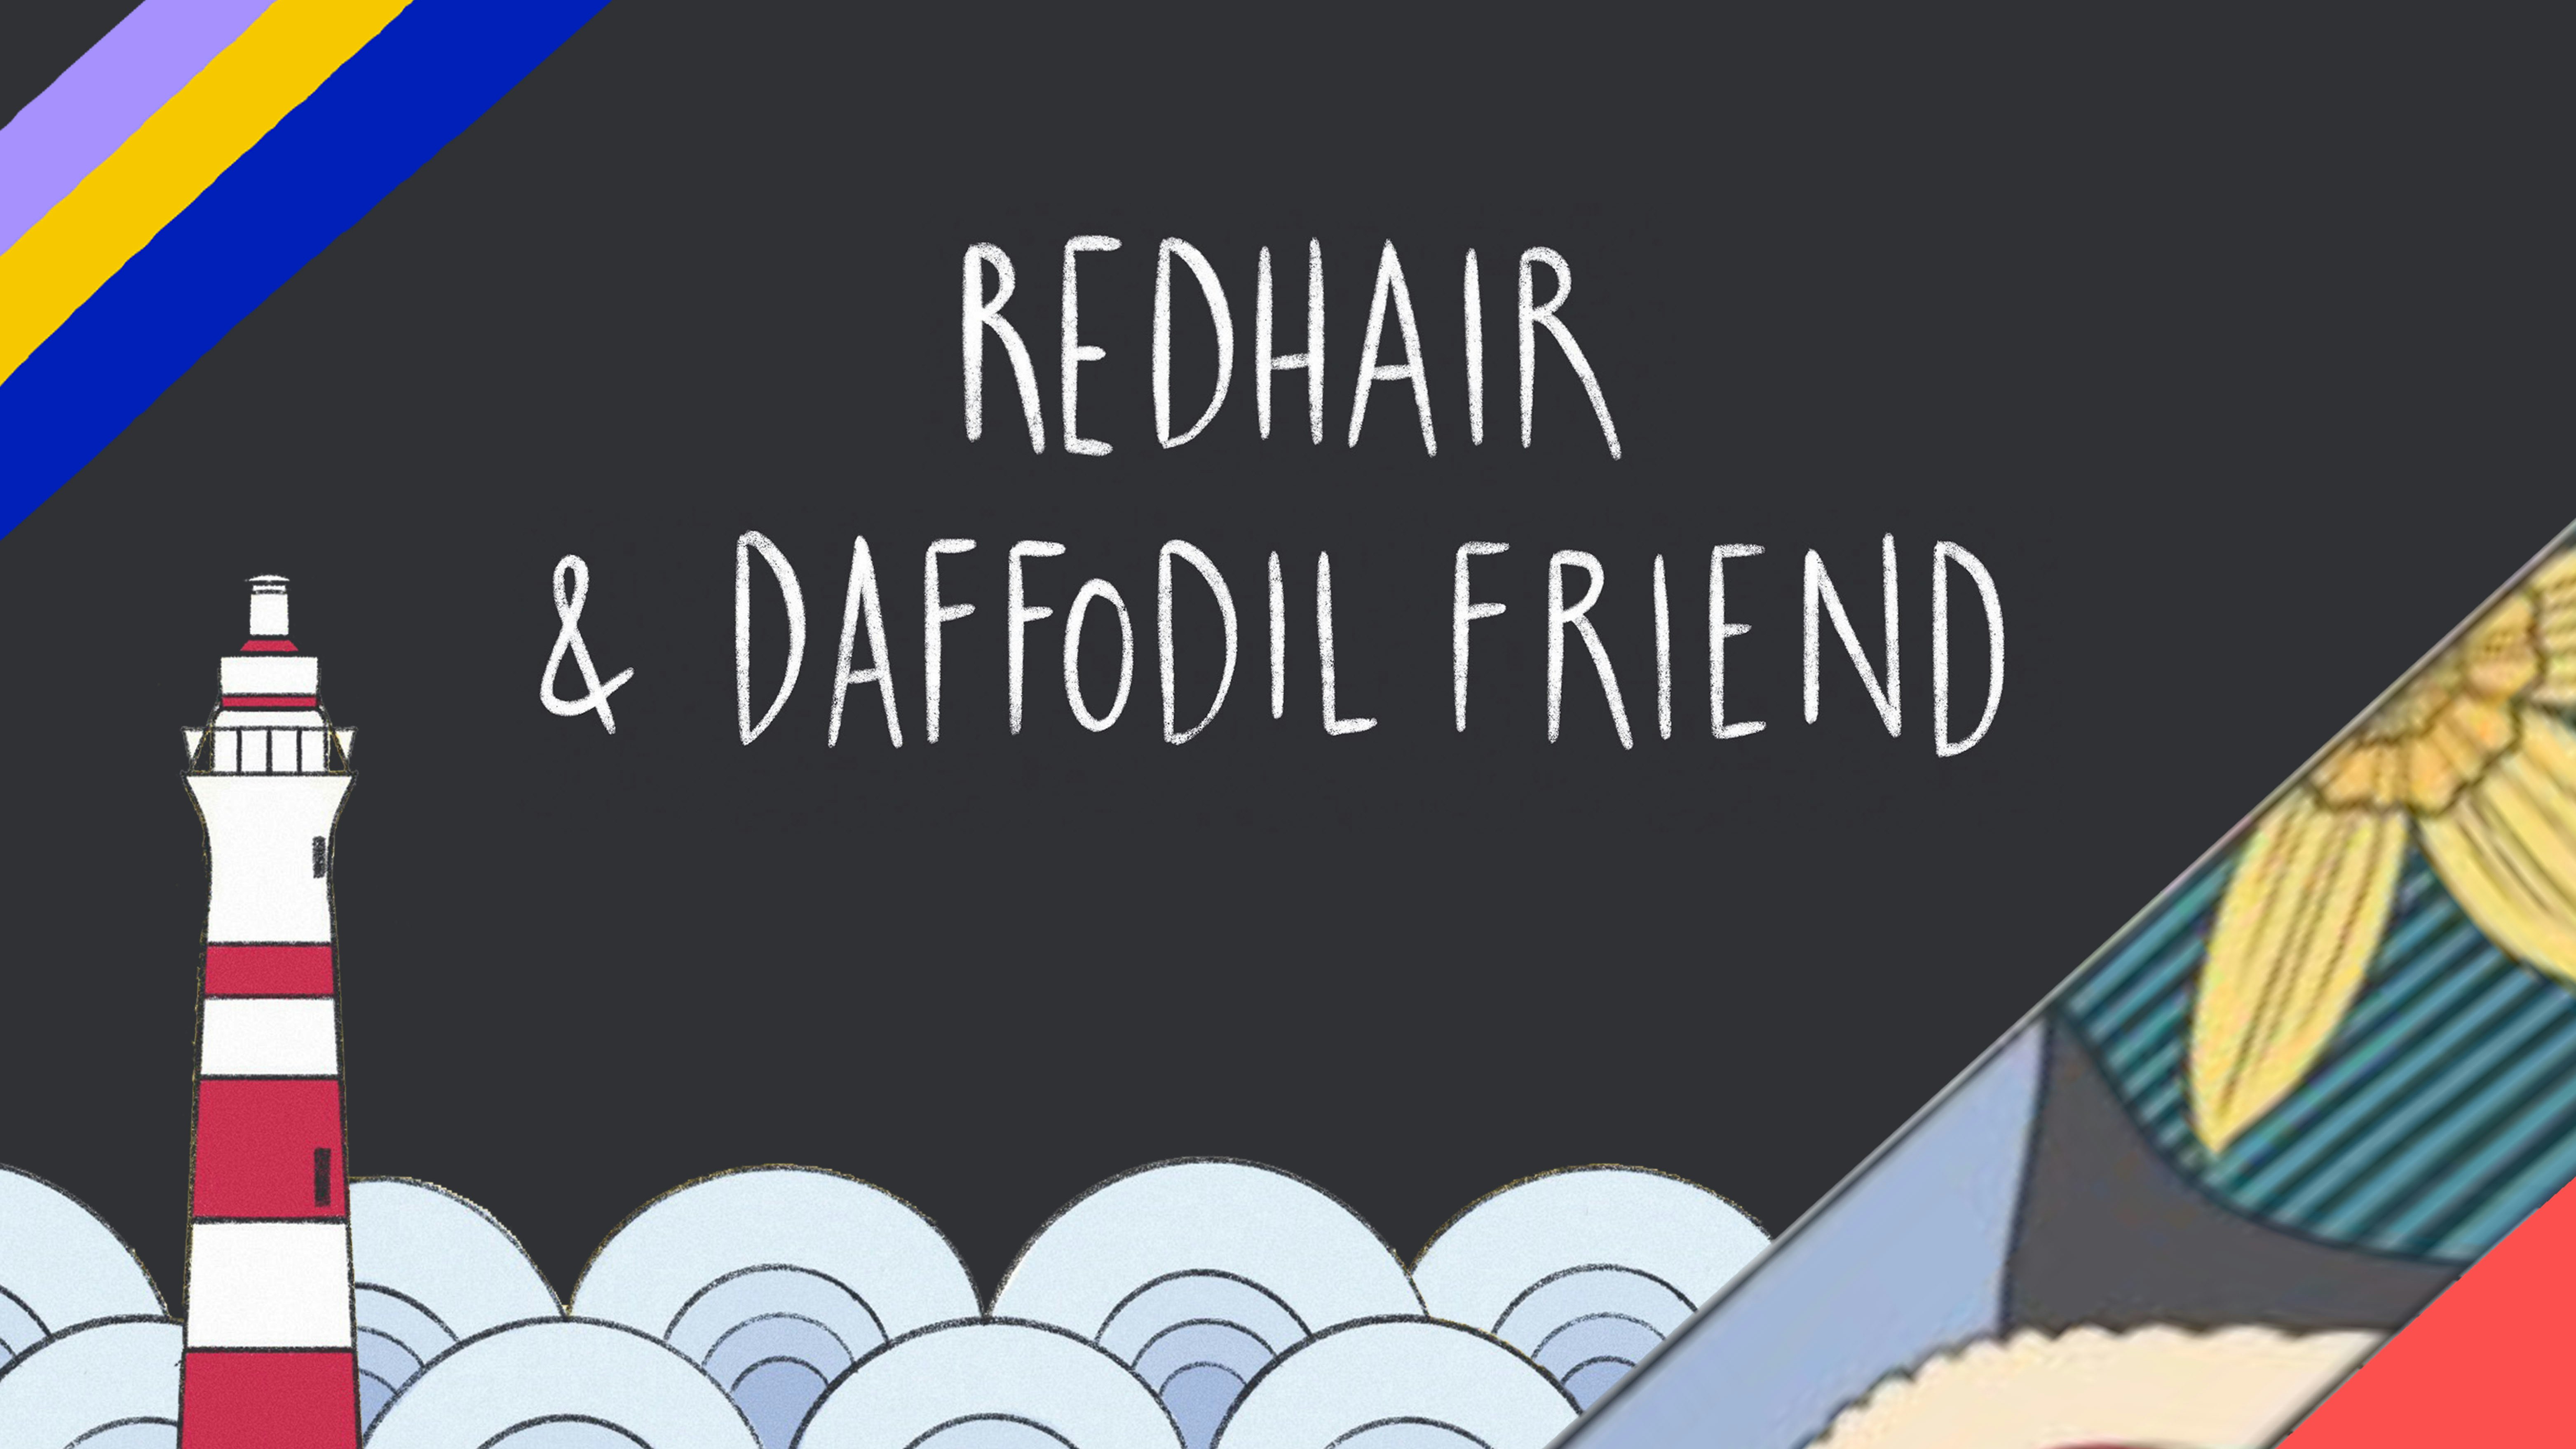 Redhair & Daffodil Friend